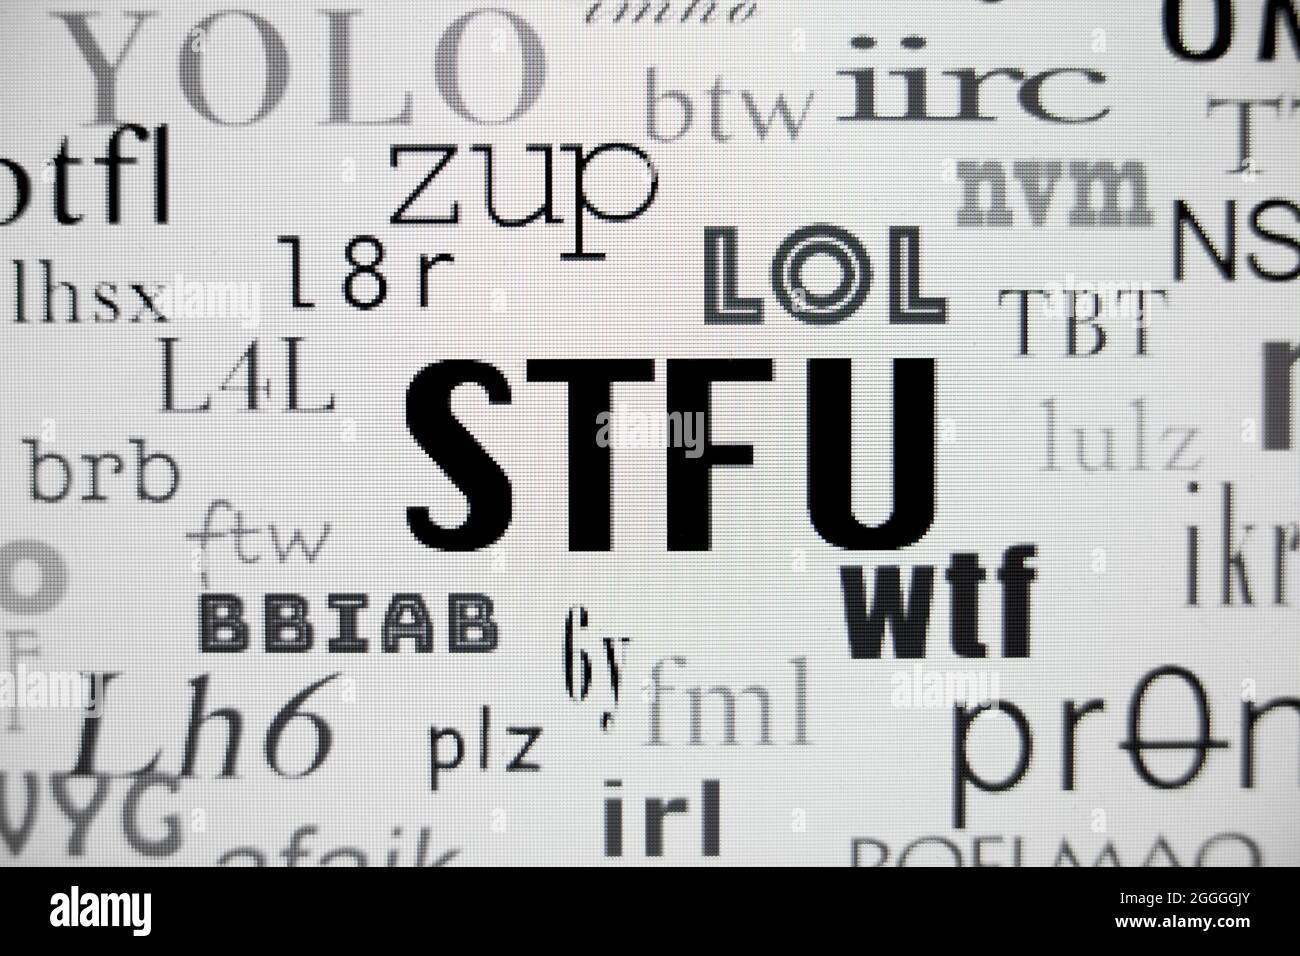 STFU e altri acronimi Internet comunemente utilizzati sullo schermo (slang internet, slang text, acronimi di testo) - USA Foto Stock